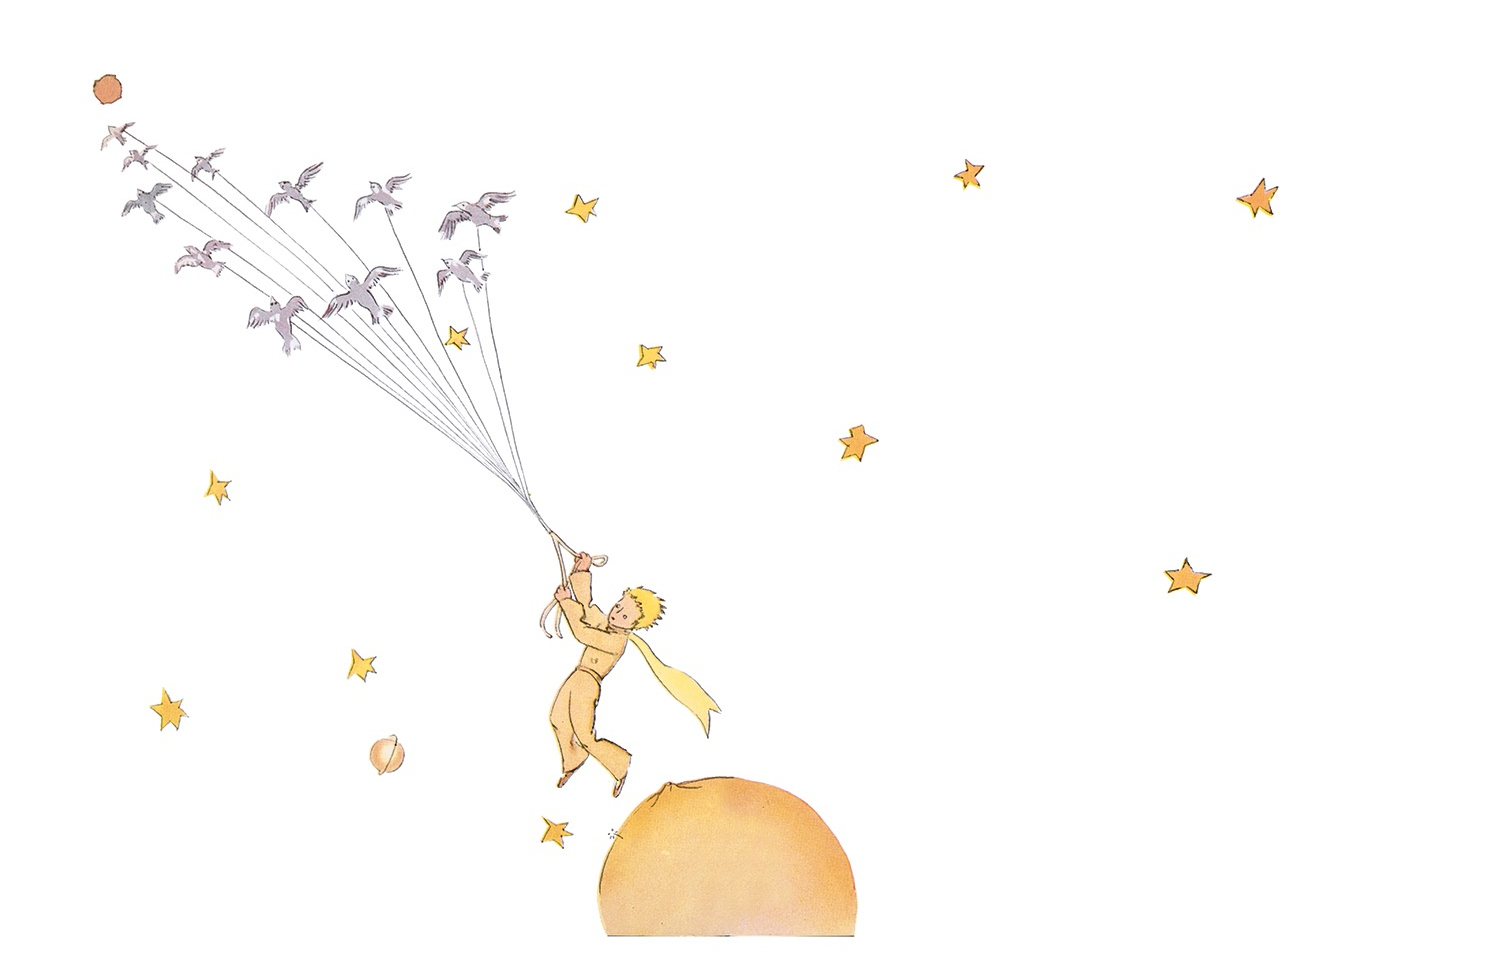 "The Little Prince" illustration by Antoine de Saint-Exupéry